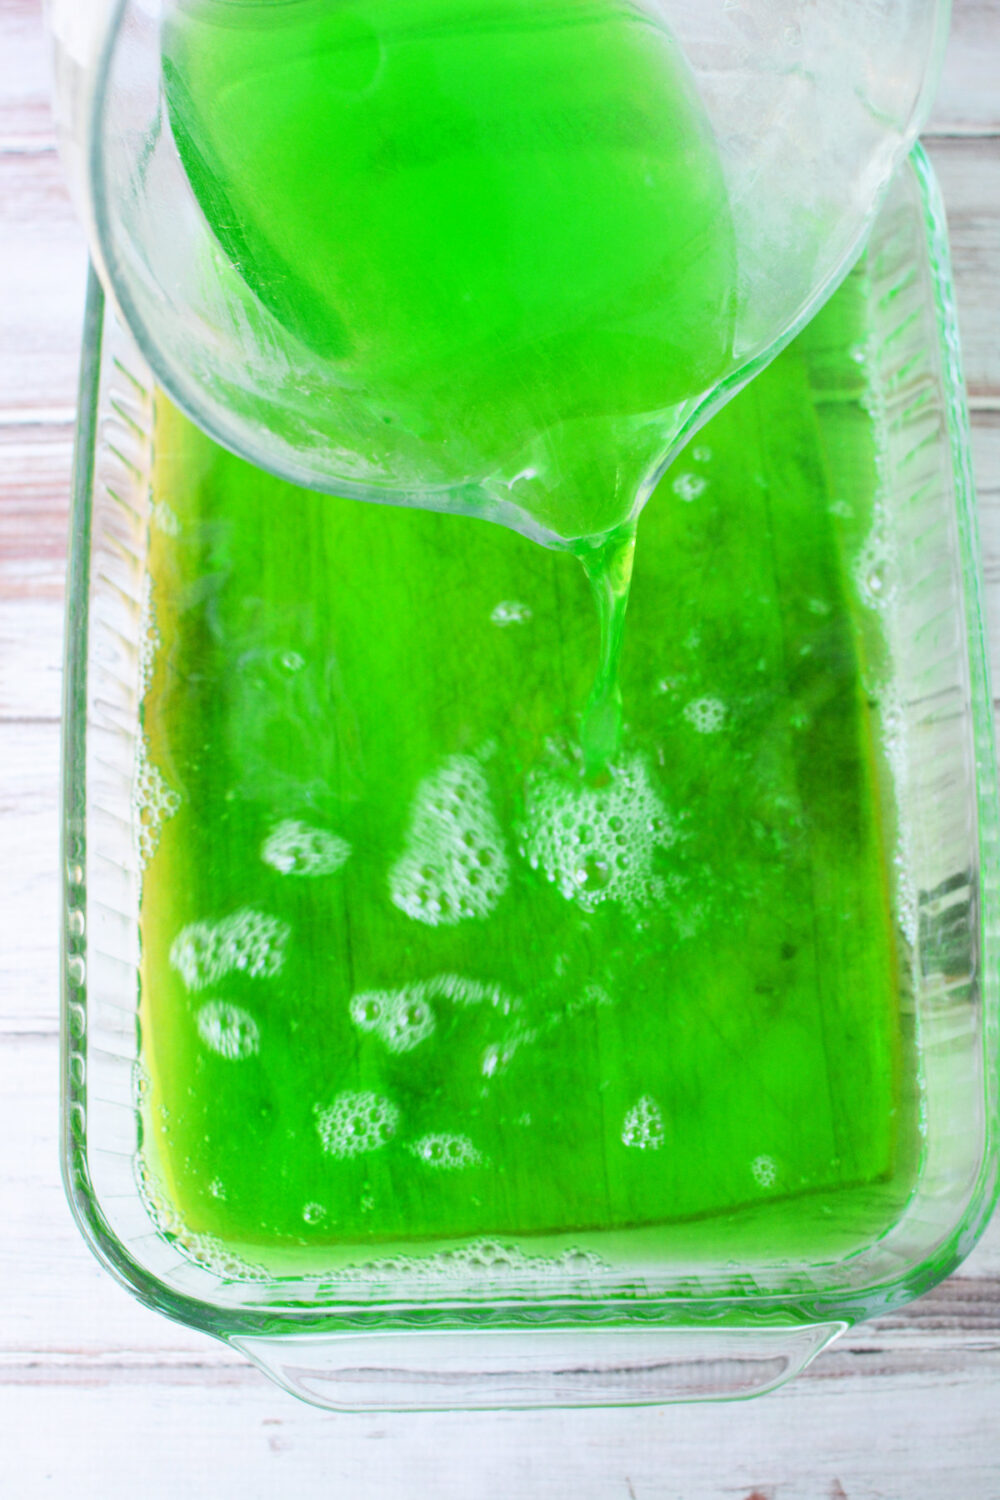 Pouring green jello into a 9x13 pan.